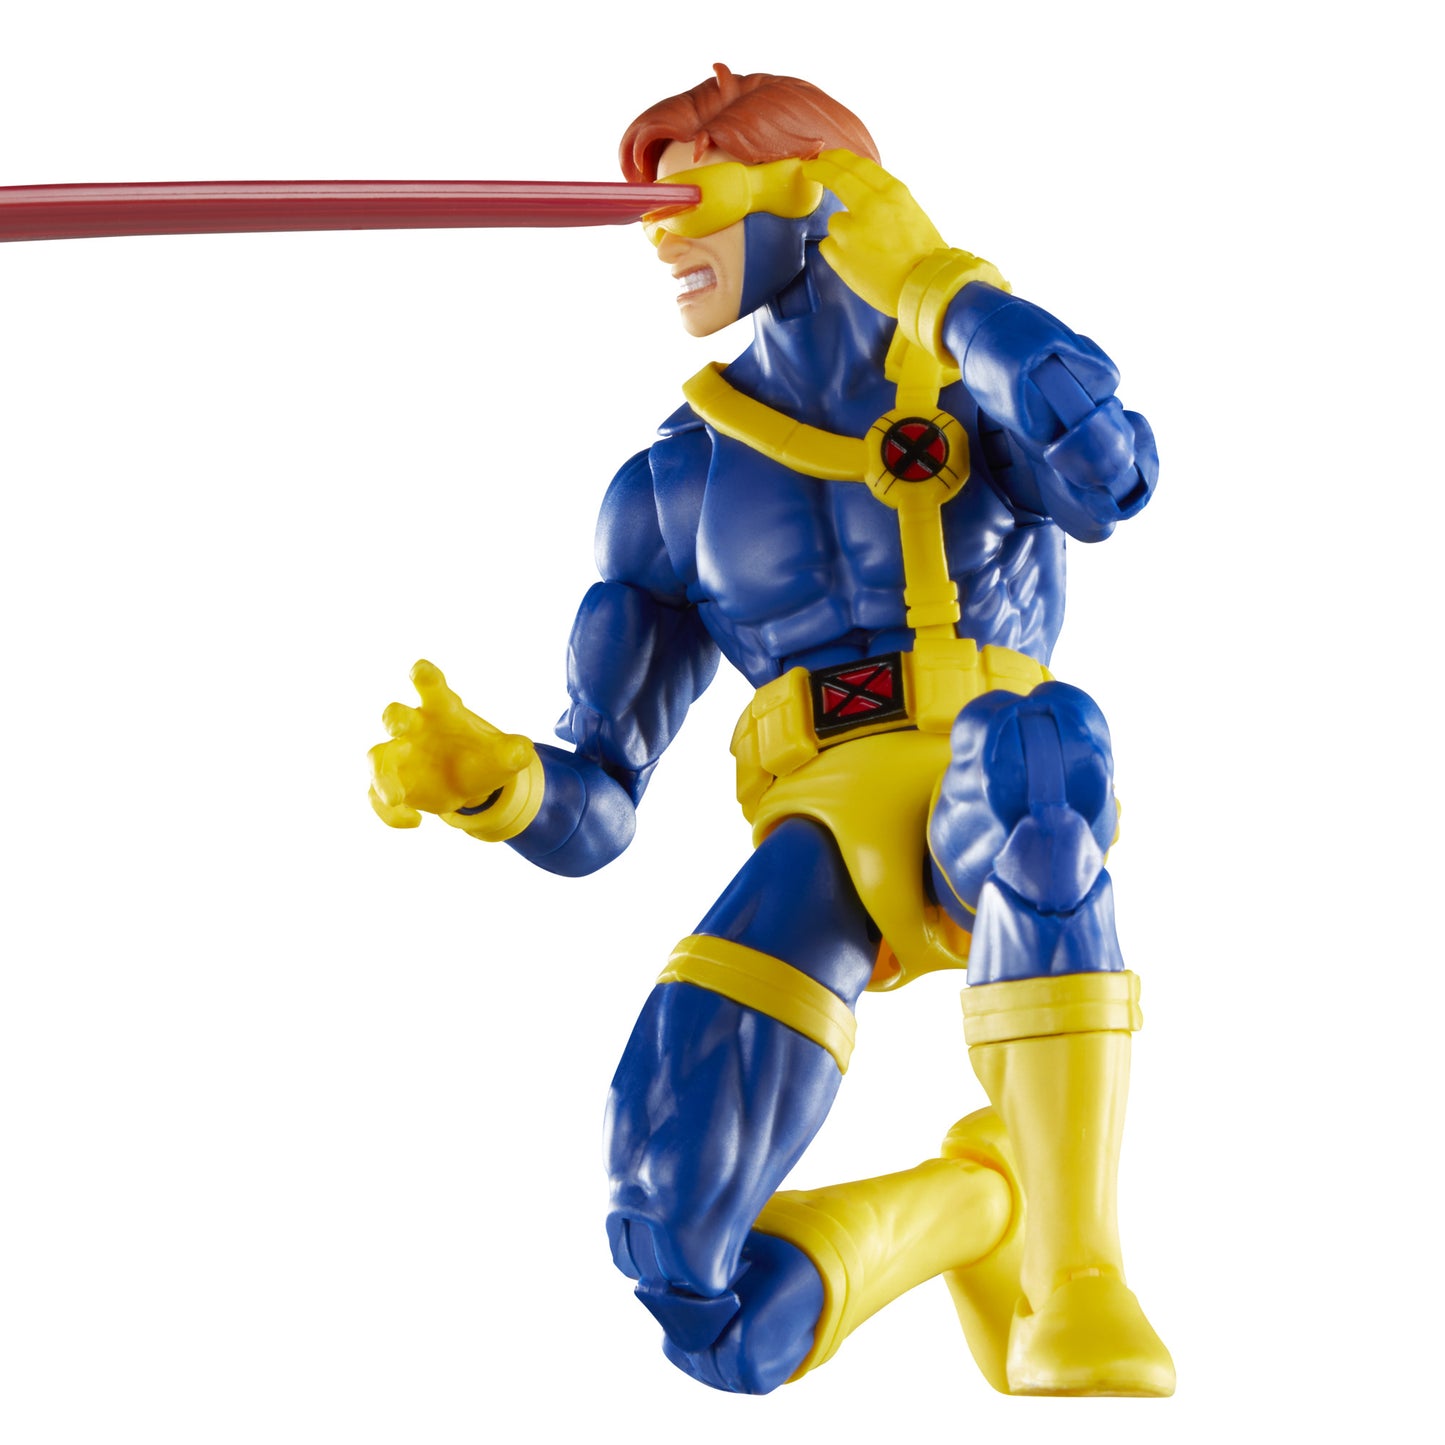 Marvel Legends X-MEN 97 - Cyclops - 6in Action Figure